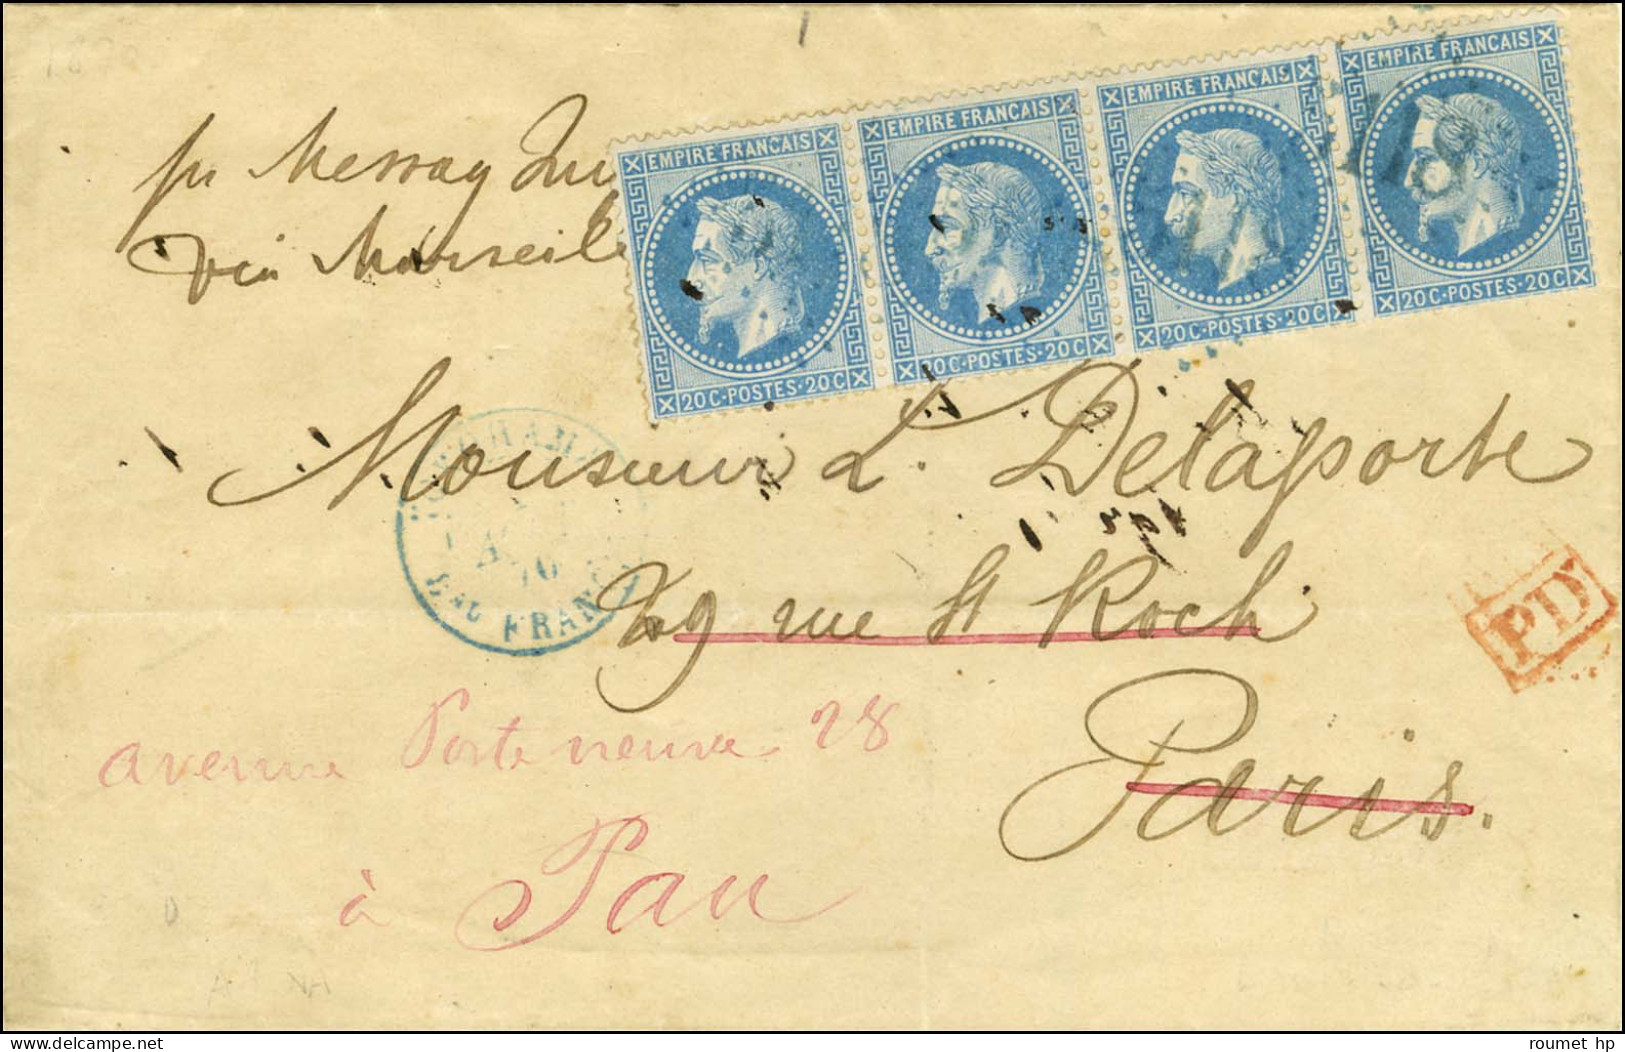 GC Bleu 5118 / N° 29 (bande De 4) Càd Bleu YOKOHAMA / Bau FRANCAIS 1 AOUT 70 Sur Lettre Pour Paris Par La Voie De Marsei - 1863-1870 Napoléon III Lauré